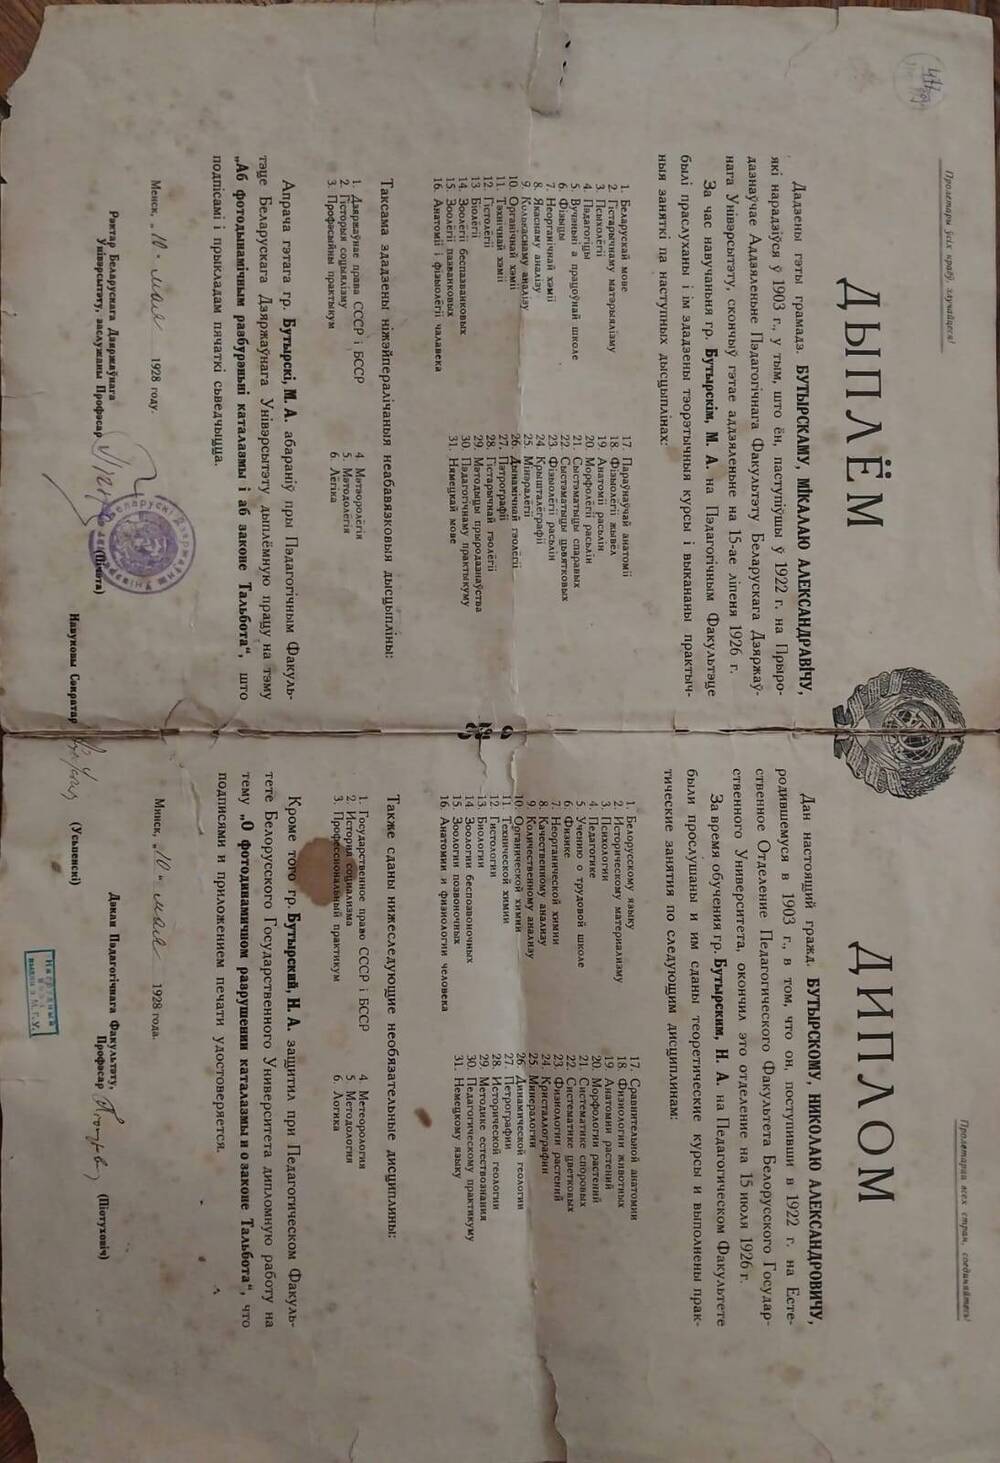 Диплом Бутырского Николая Александровича об окончании им Естественного отделения Педагогического факультета Белорусского государственного университета, 10 мая 1928 года.